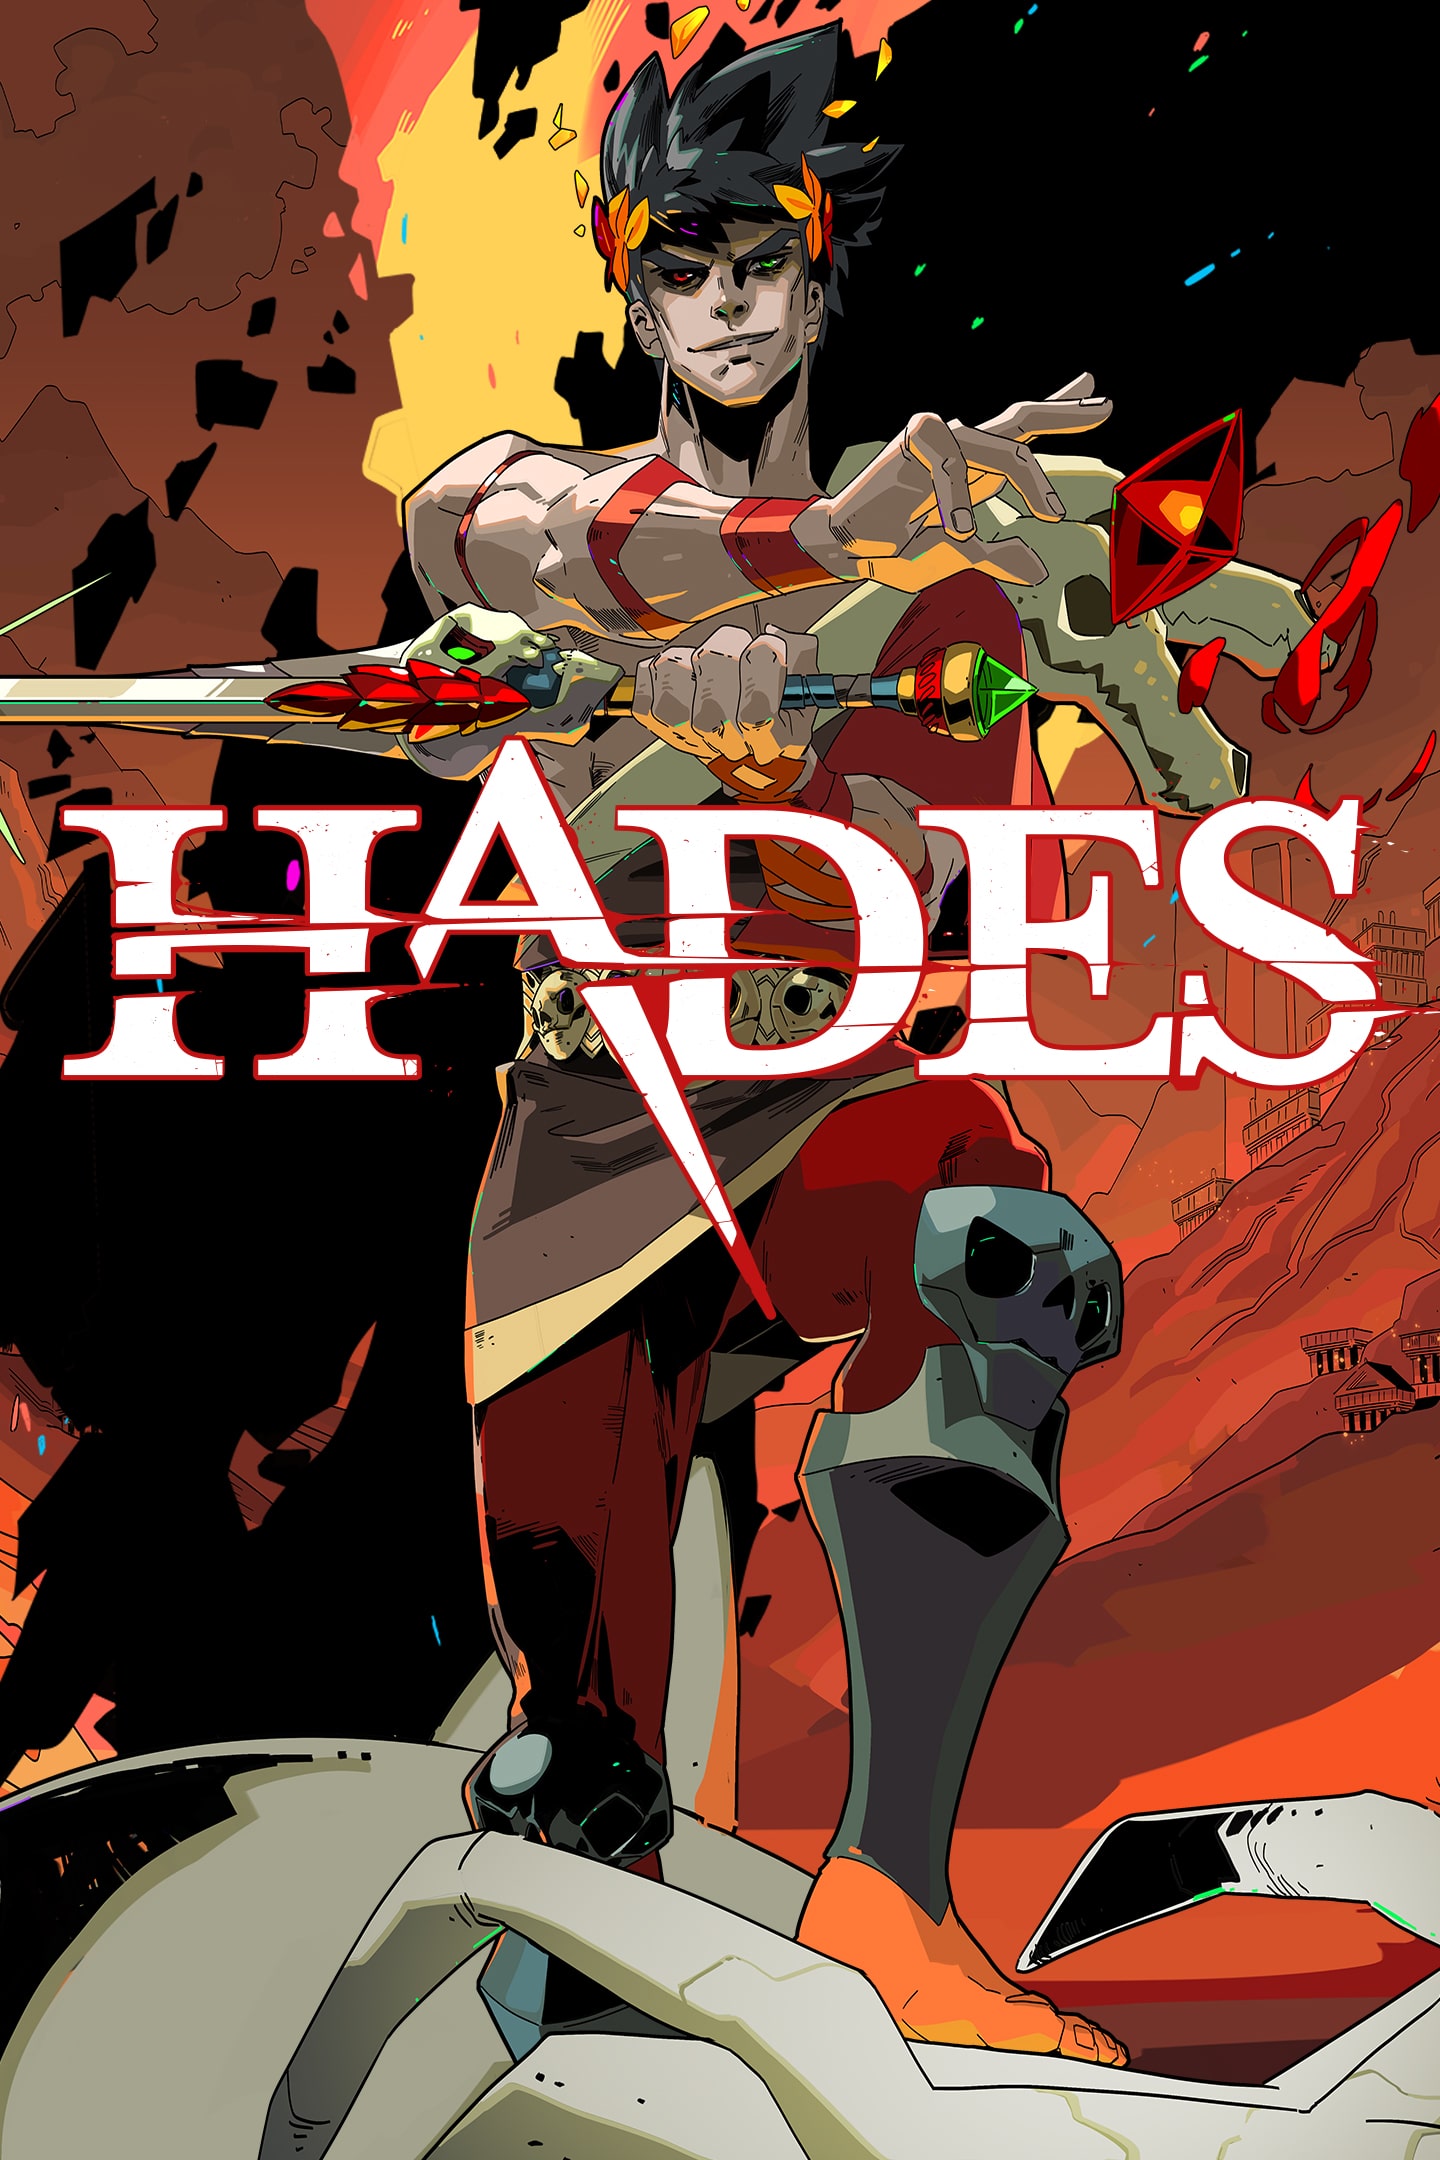 Hades - PlayStation 5